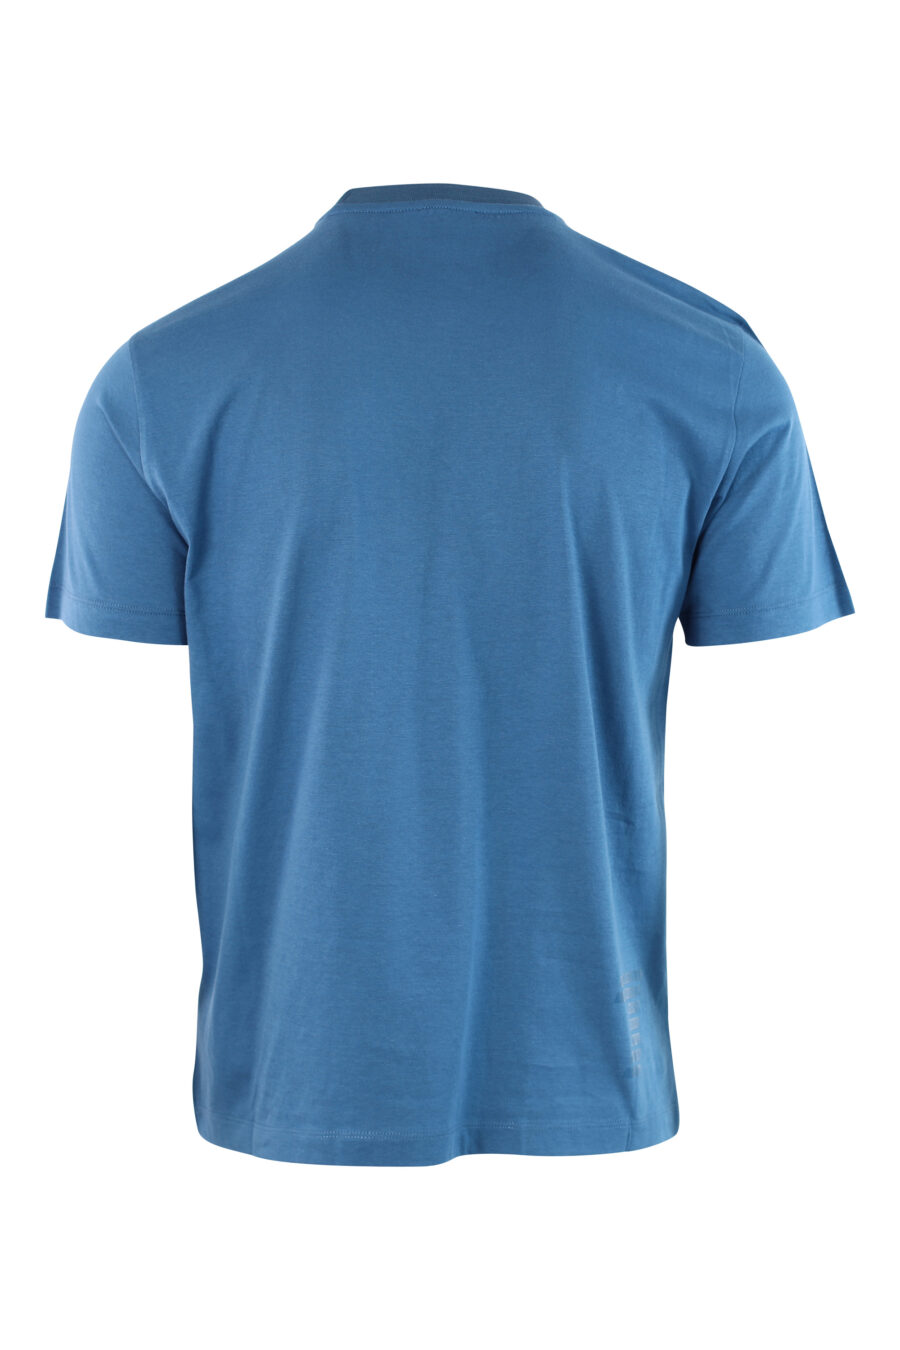 T-shirt bleu clair avec logo mini sur le badge - IMG 3798